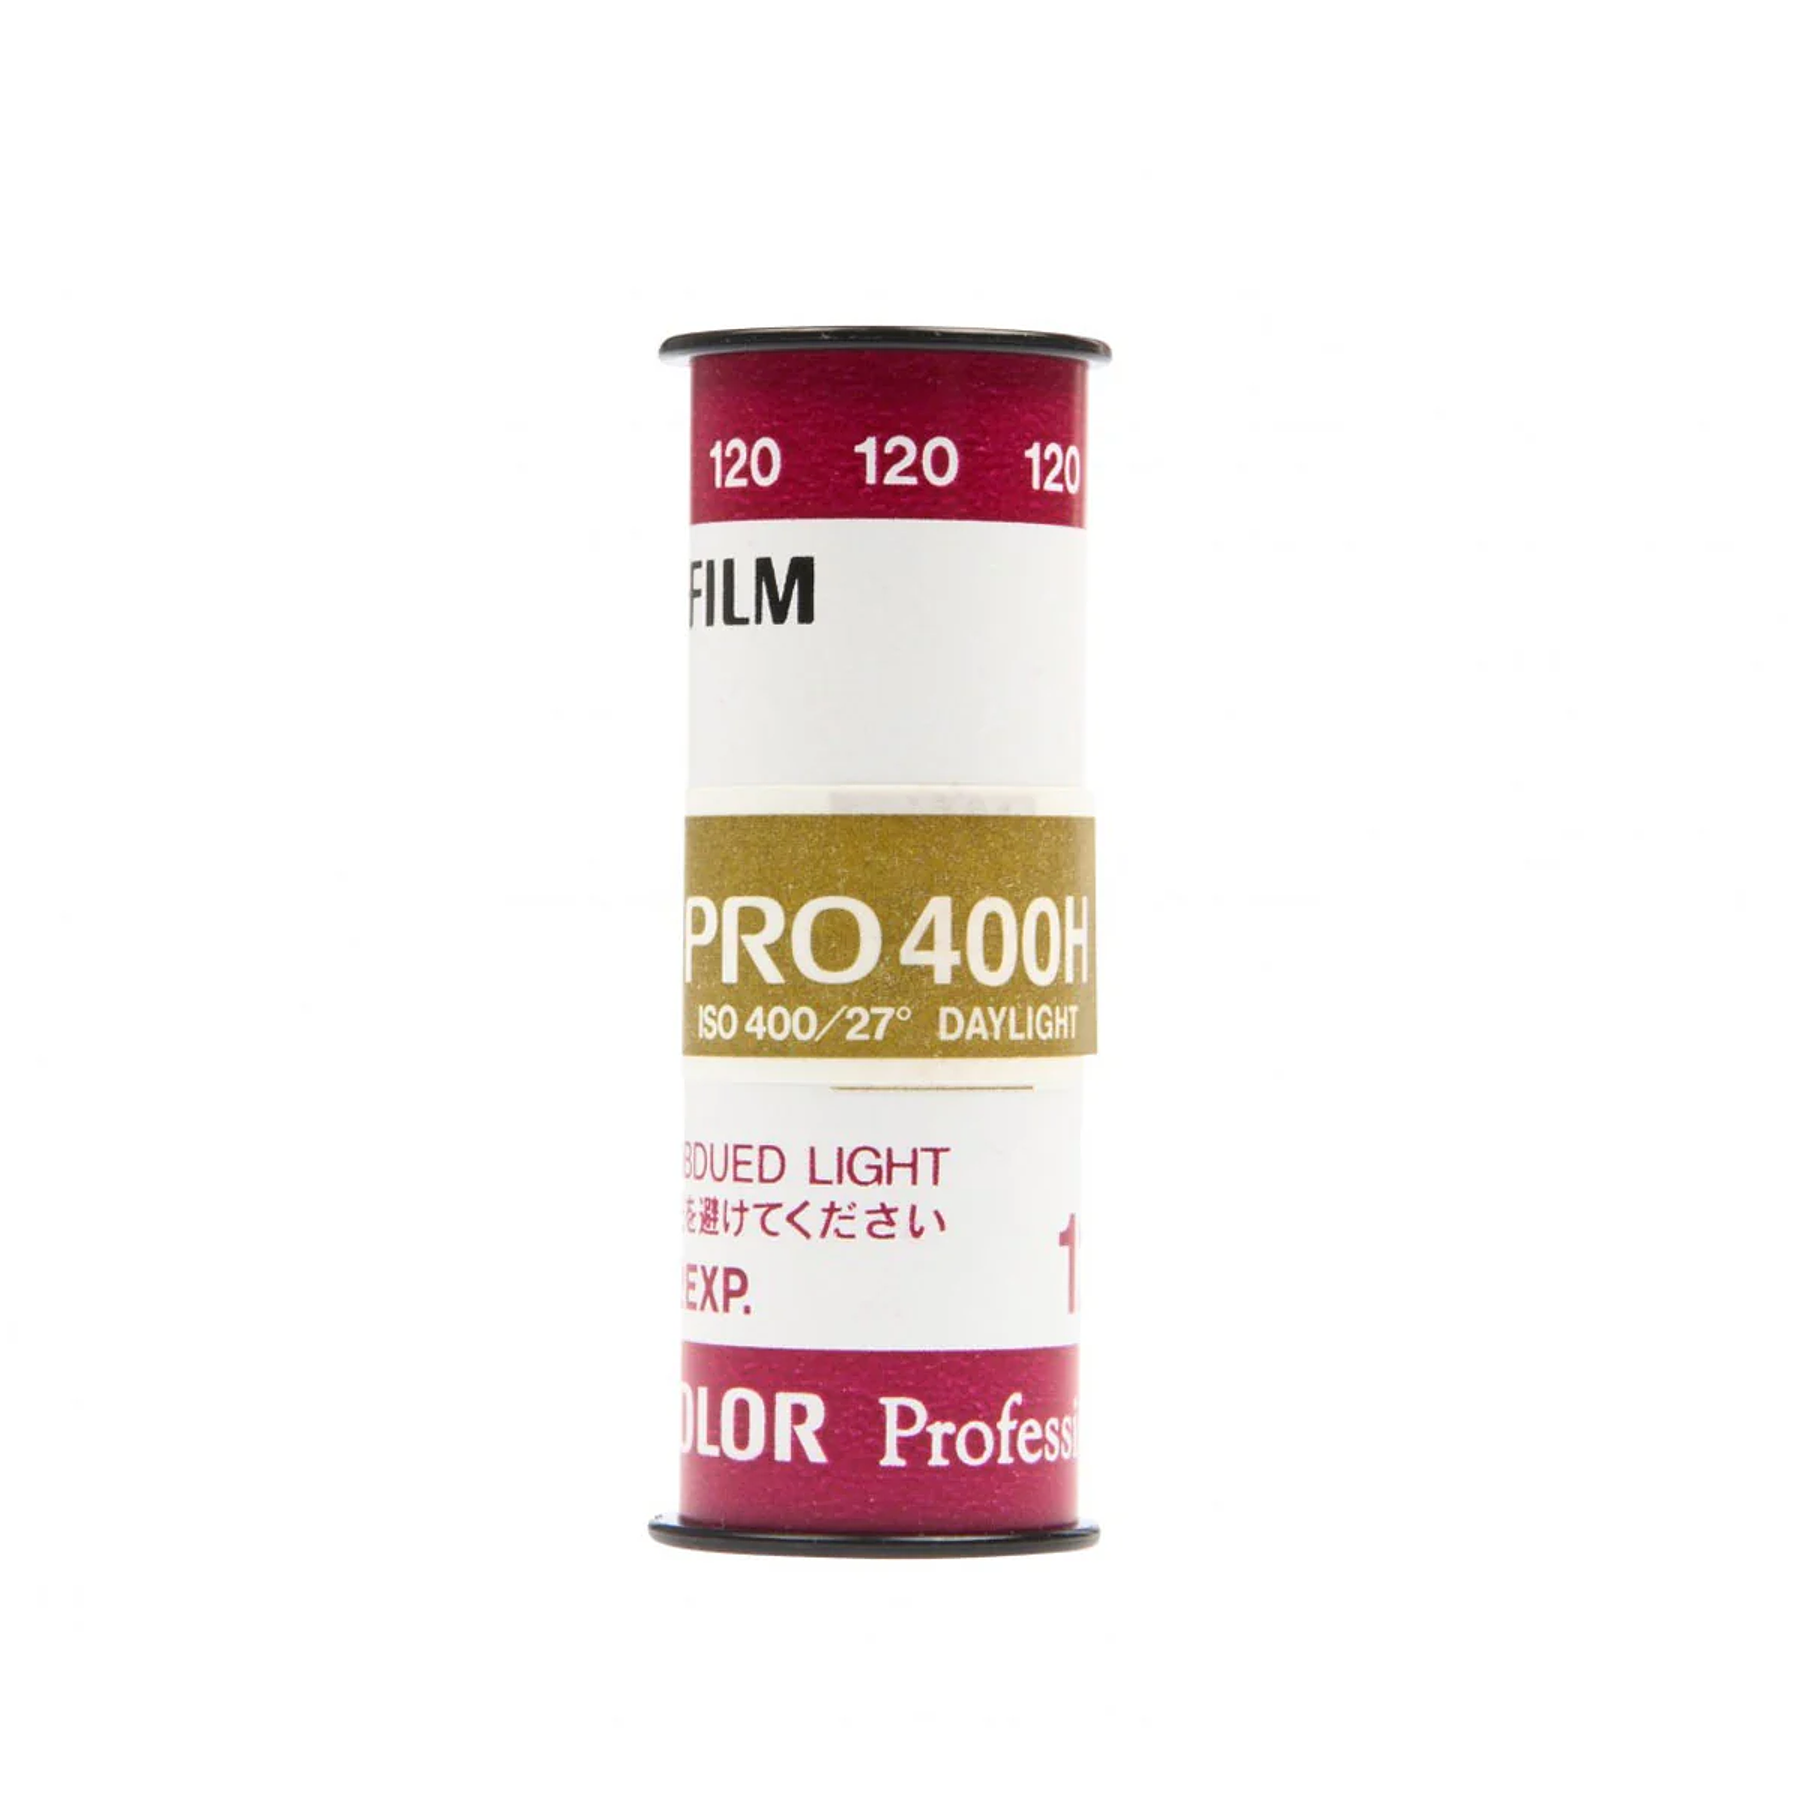 FUJIFILM Fujicolor PRO 400H Professional Color (120mm film)